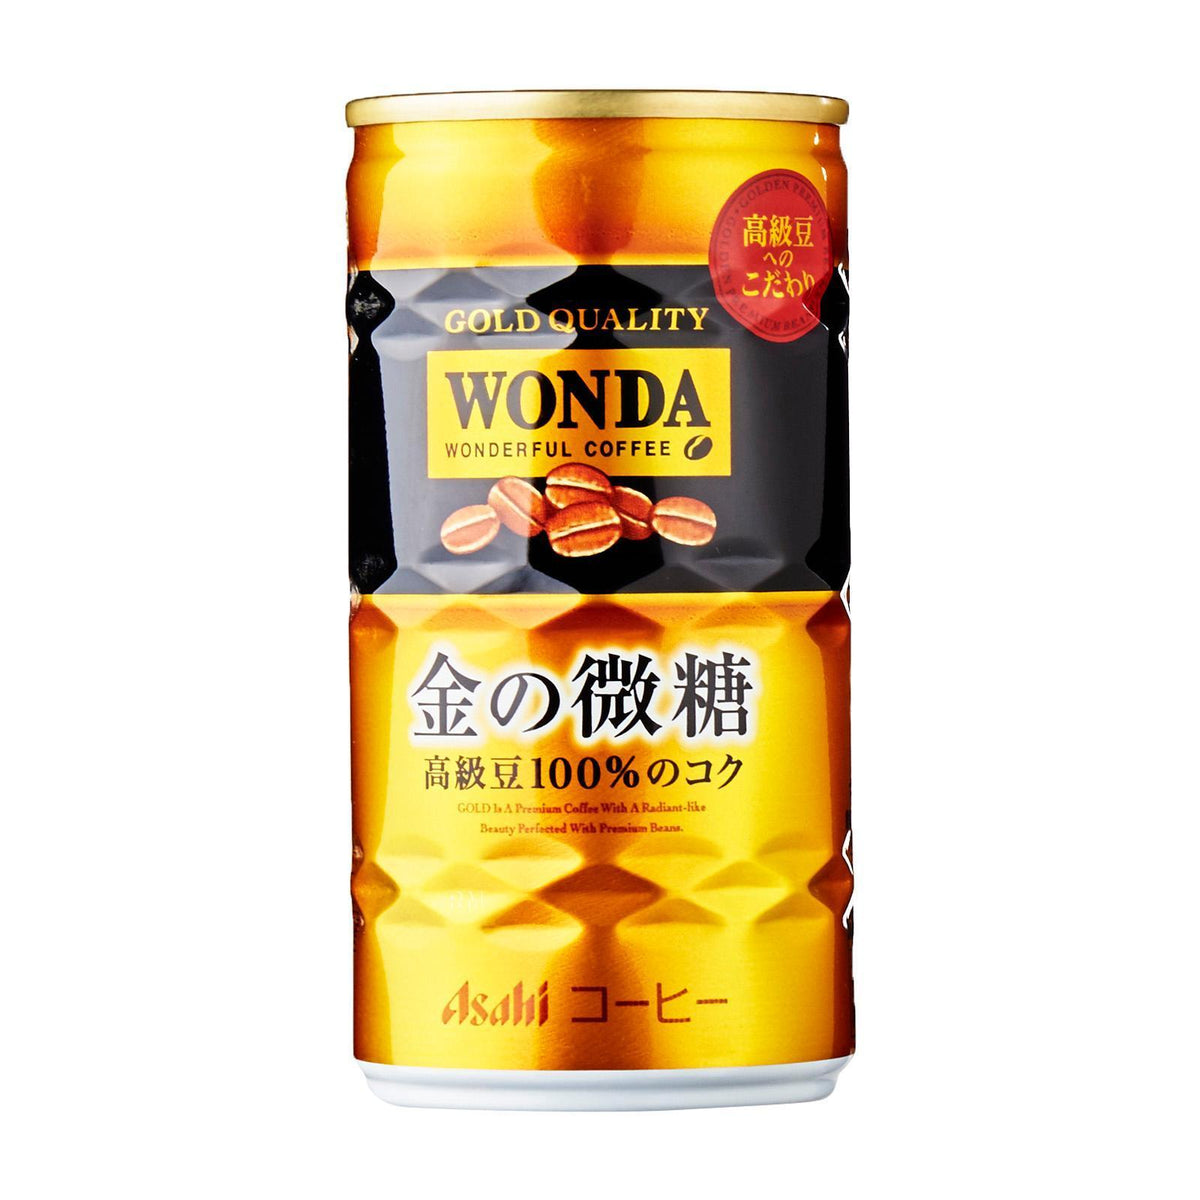 金の微糖 コーヒー Asahi Wonda Coffee Kin No Bitoh - Gold Quality 190ml — Honeydaes - Japan Foods Grocery Online